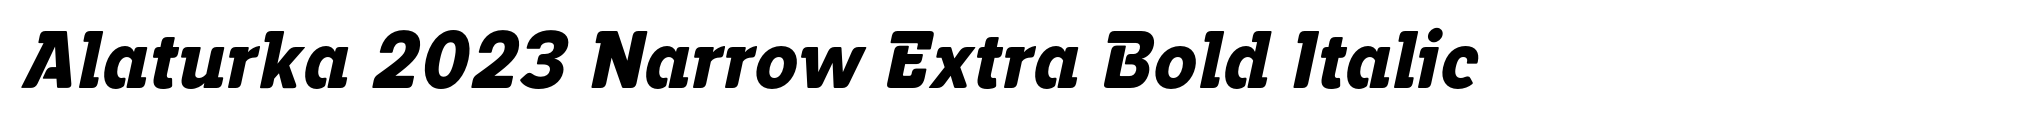 Alaturka 2023 Narrow Extra Bold Italic image